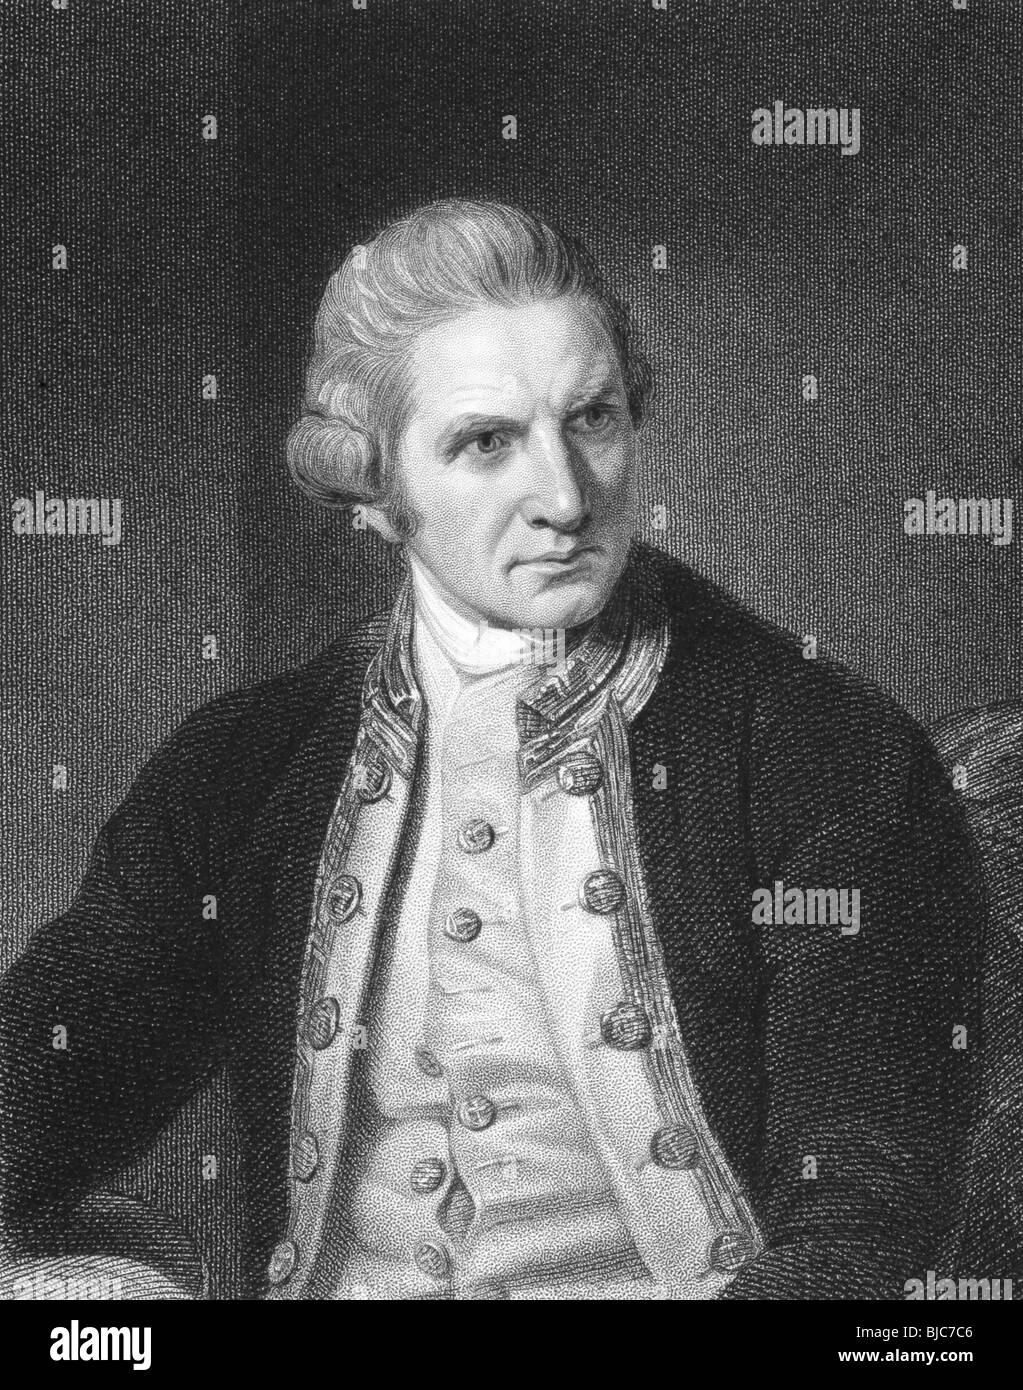 Le capitaine Cook (1728-1779) gravure sur des années 1800.French explorer, navigateur et cartographe. Banque D'Images